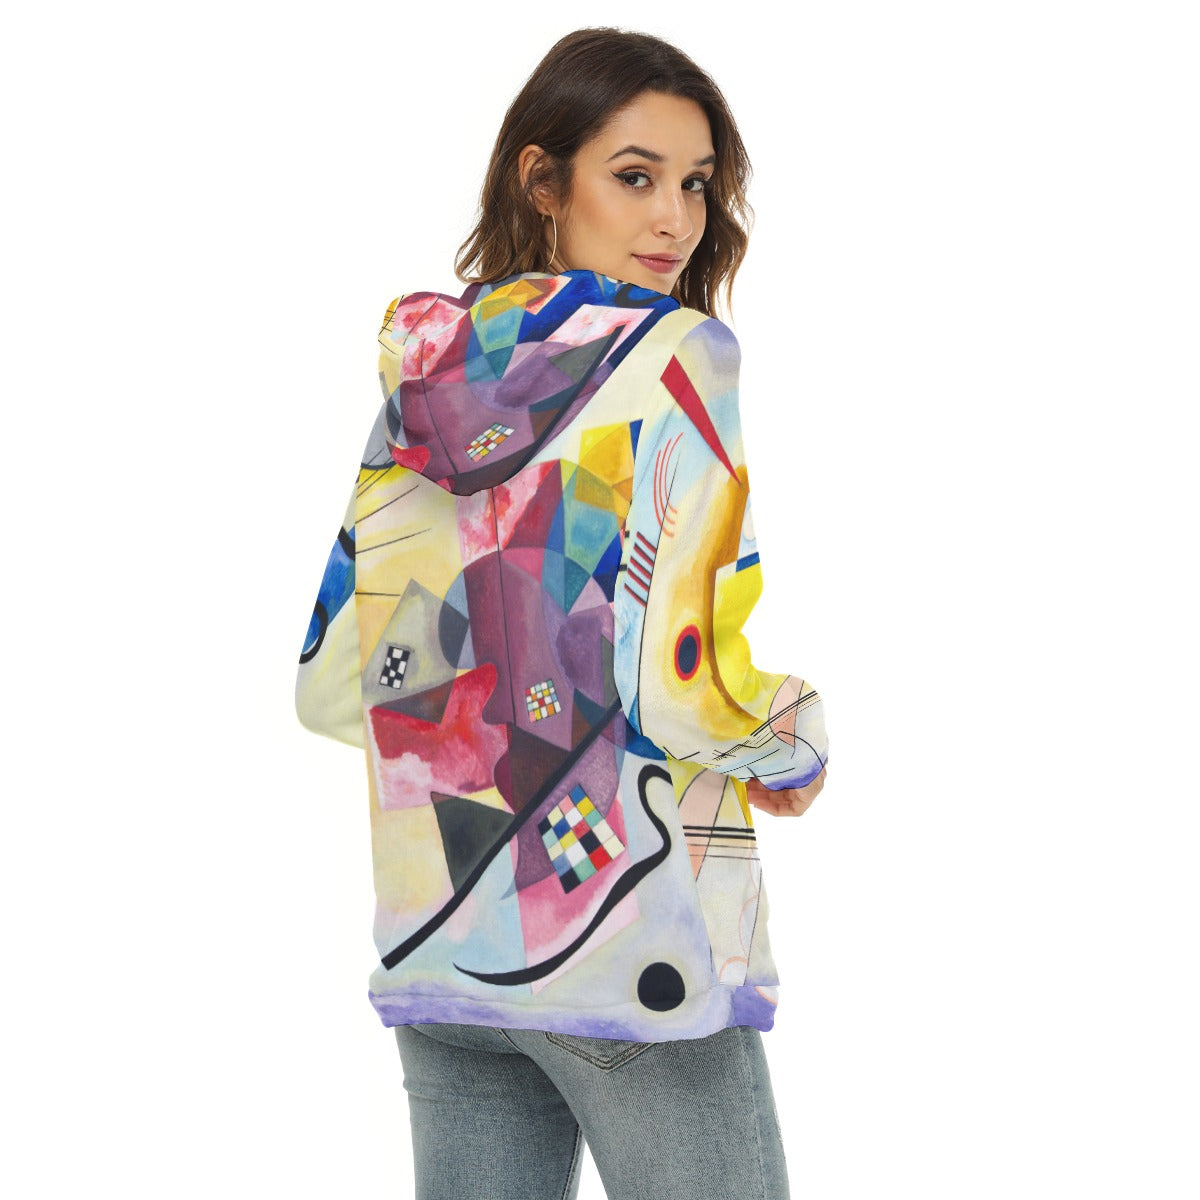 Abstract art inspired fleece hoodie for women